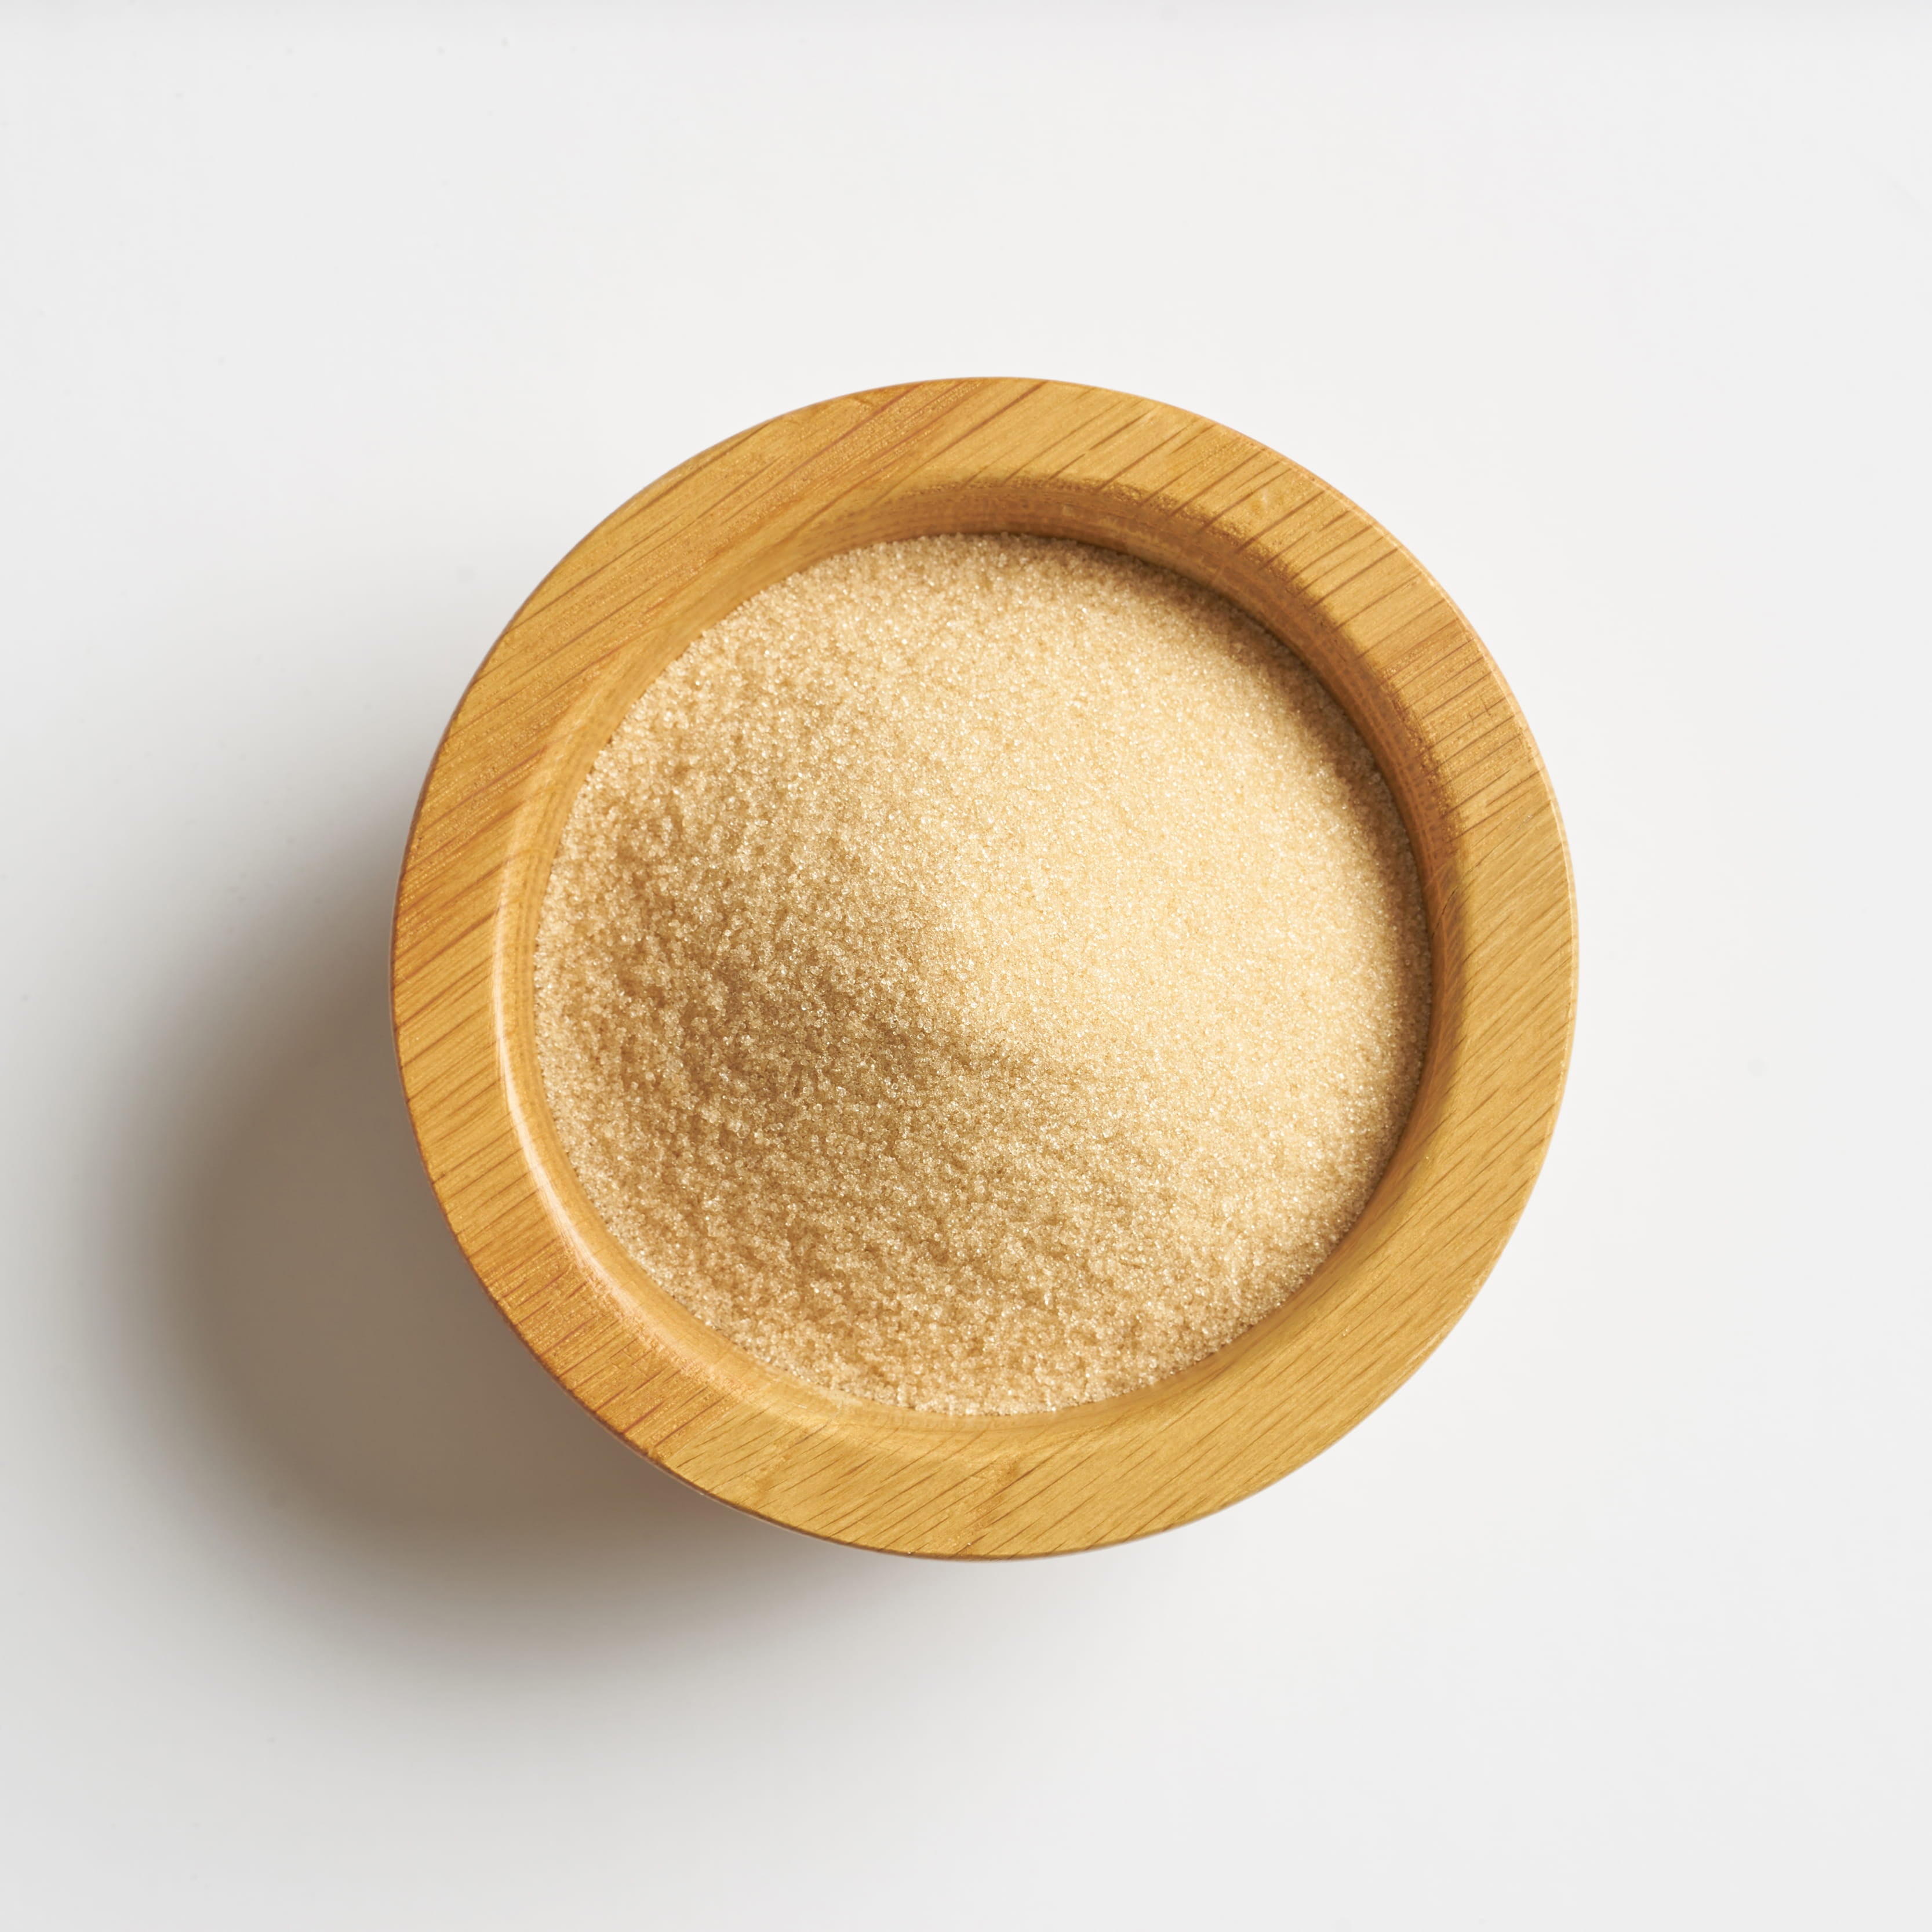 Lo llamamos golden por qué su color y sabor es similar al azúcar morena. 2:1 equivale al dulzor del azúcar, son doblemente más dulces que una cuchara de azúcar de caña o morena.